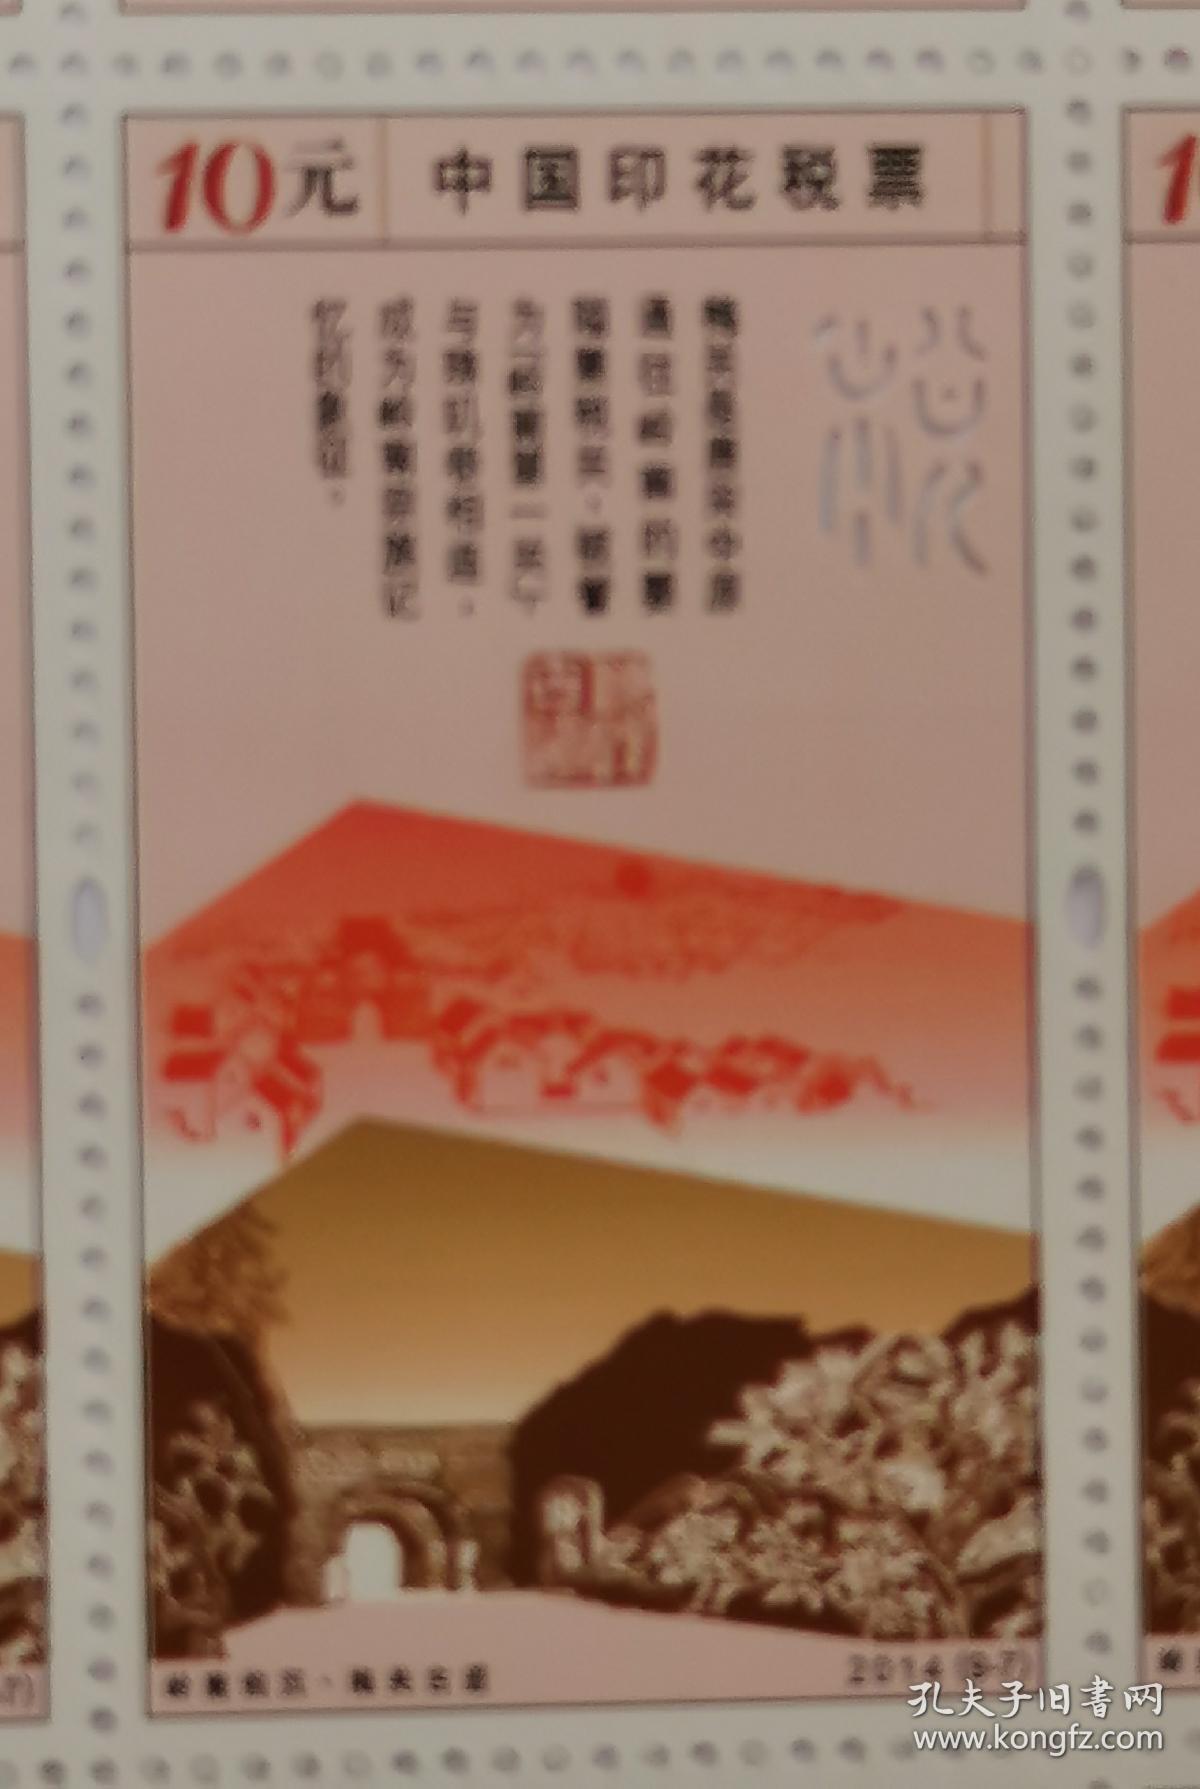 2014年中国印花税票岭南钩沉梅关古道10元面值全新整版20枚保真带荧光。